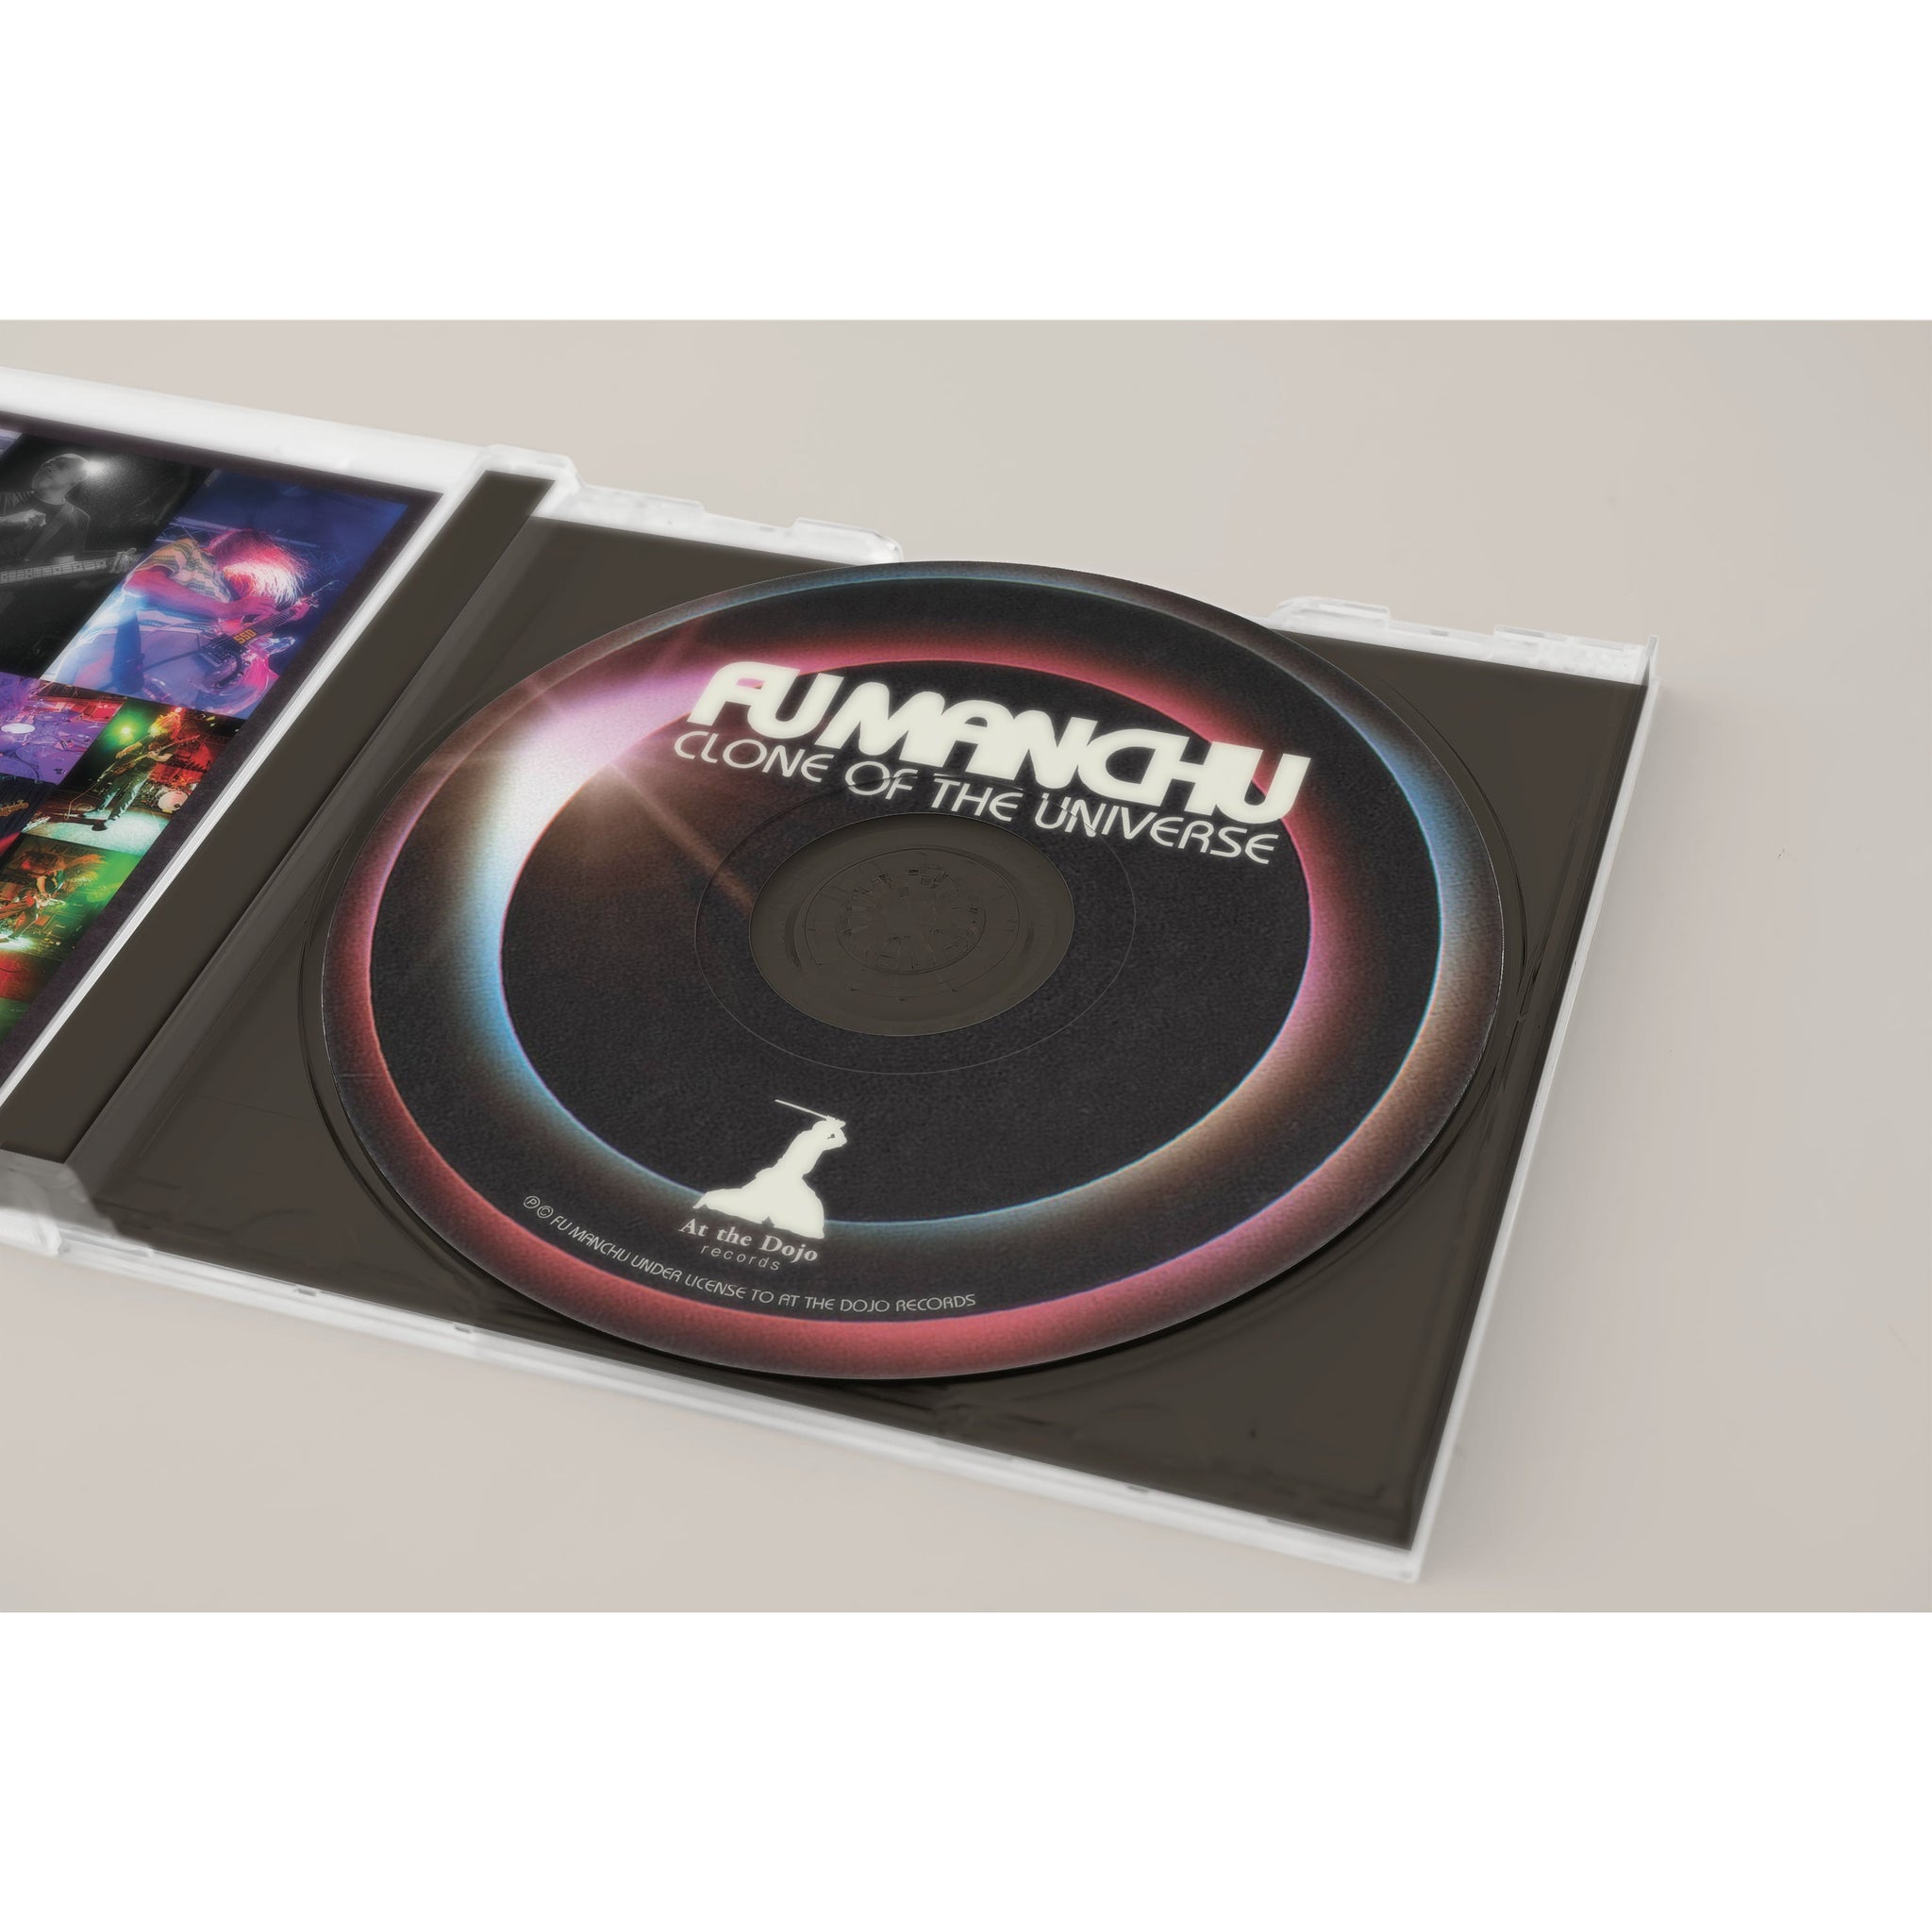 Fu Manchu - Clone Of The Universe CD